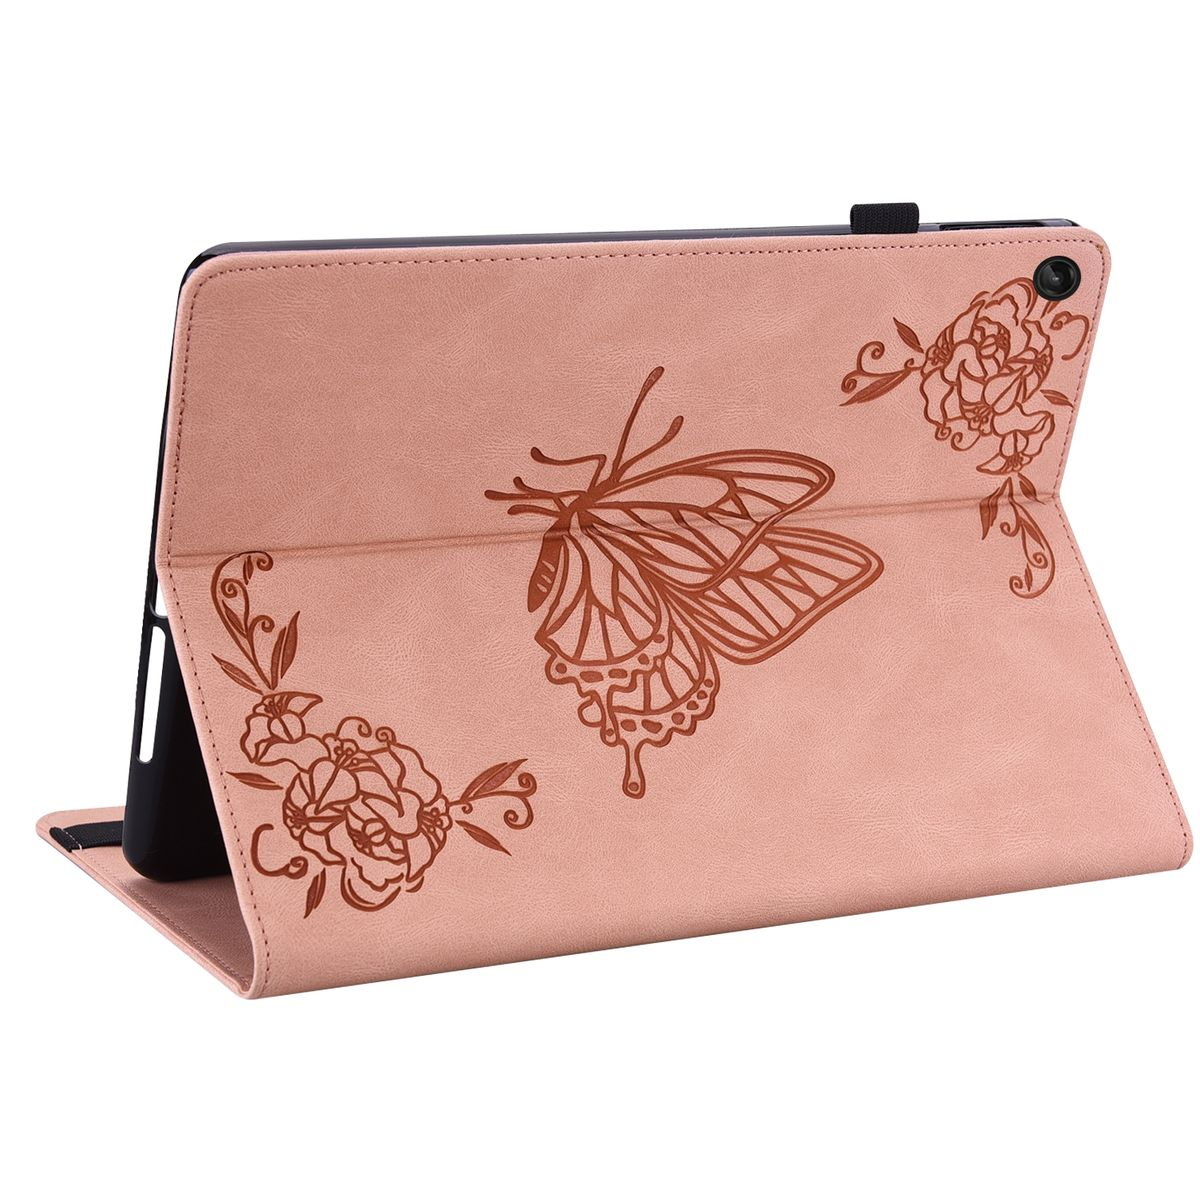 WIGENTO Design Muster Schmetterling Motiv für Full Tasche Kunstleder Kunstleder, Rose Gold Cover Tablethülle Lenovo